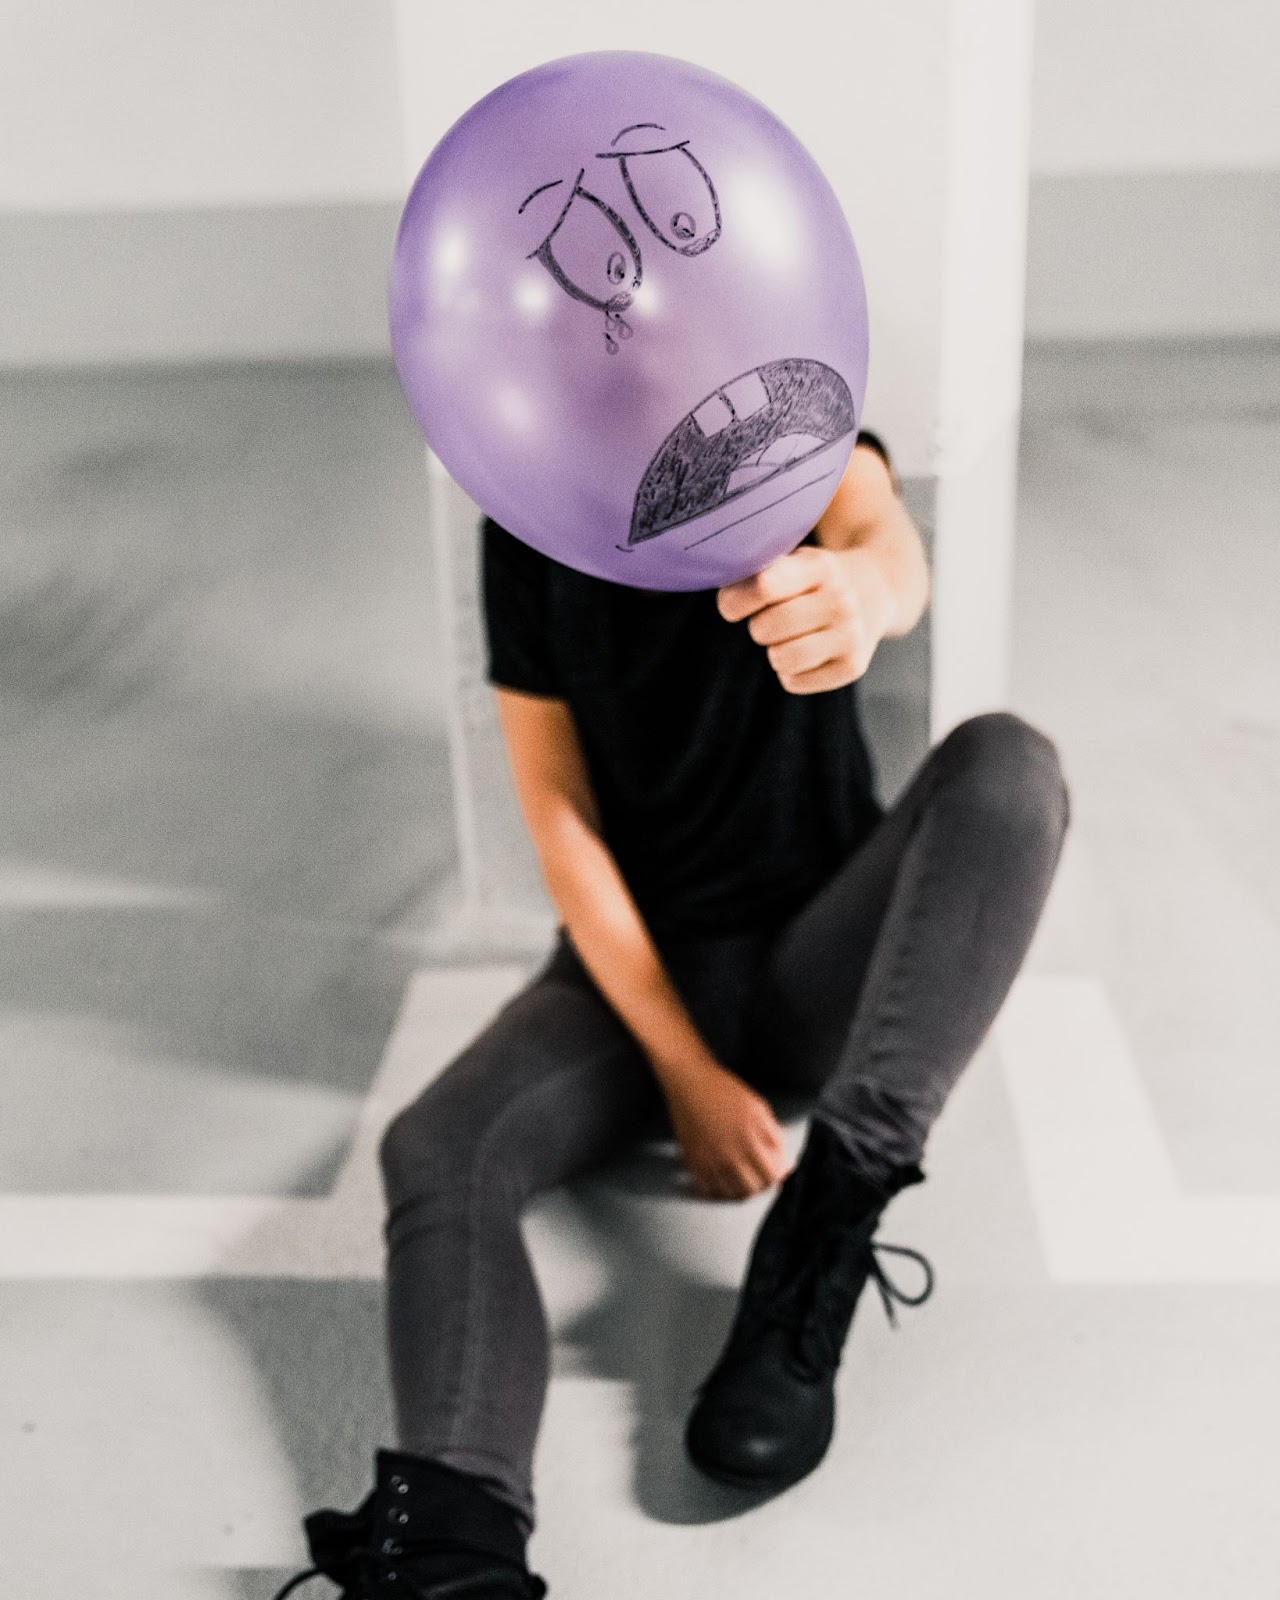 A person holding a sad balloon